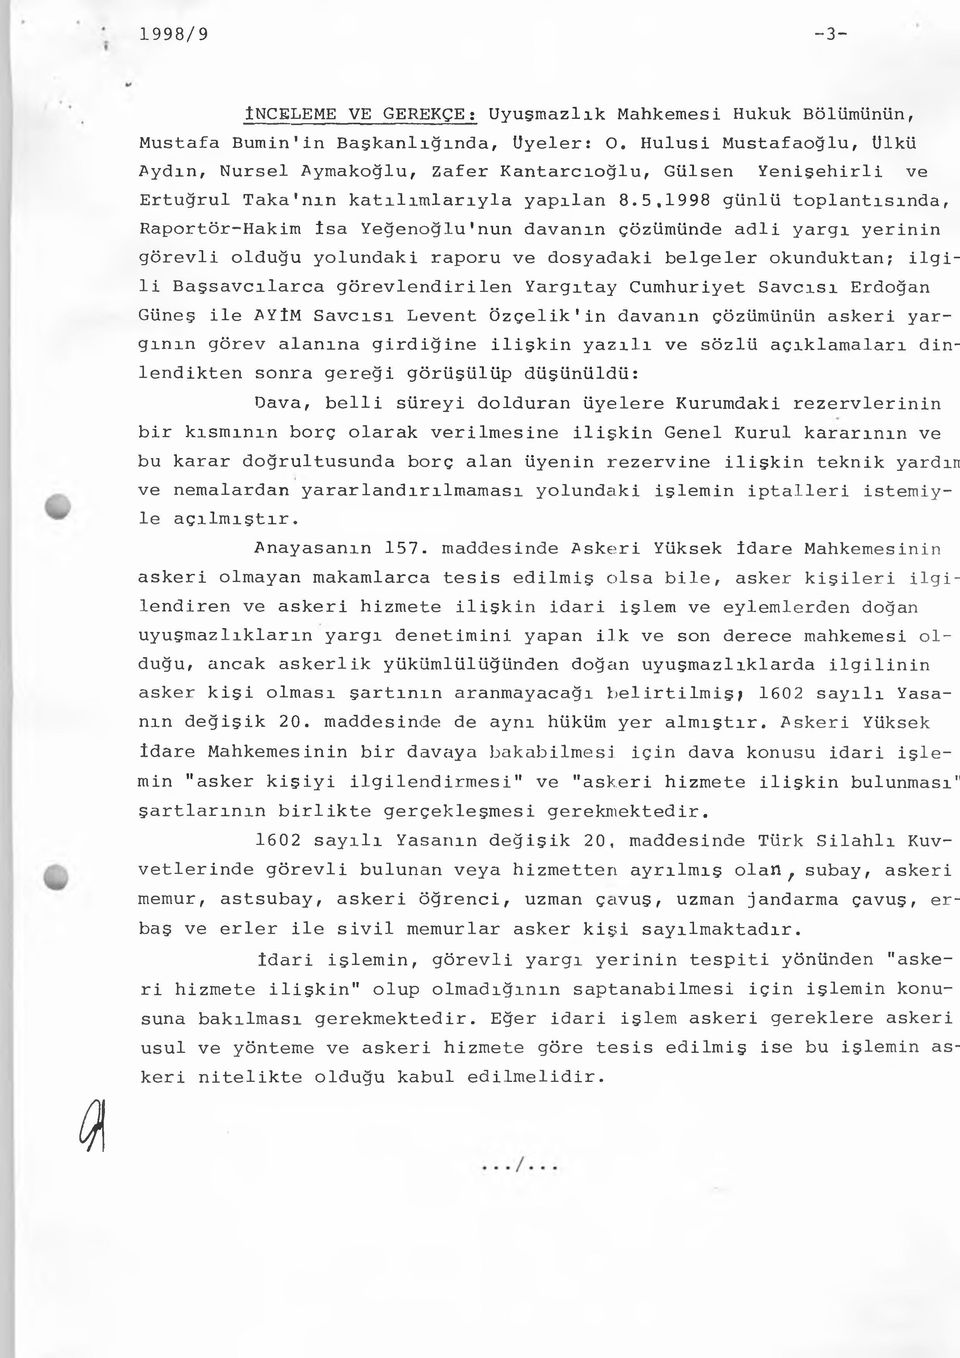 5,1998 günlü toplantısında, Raportör-Hakim İsa Yeğenoğlu1nun davanın çözümünde adli yargı yerinin görevli olduğu yolundaki raporu ve dosyadaki belgeler okunduktan; ilgili Başsavcılarca